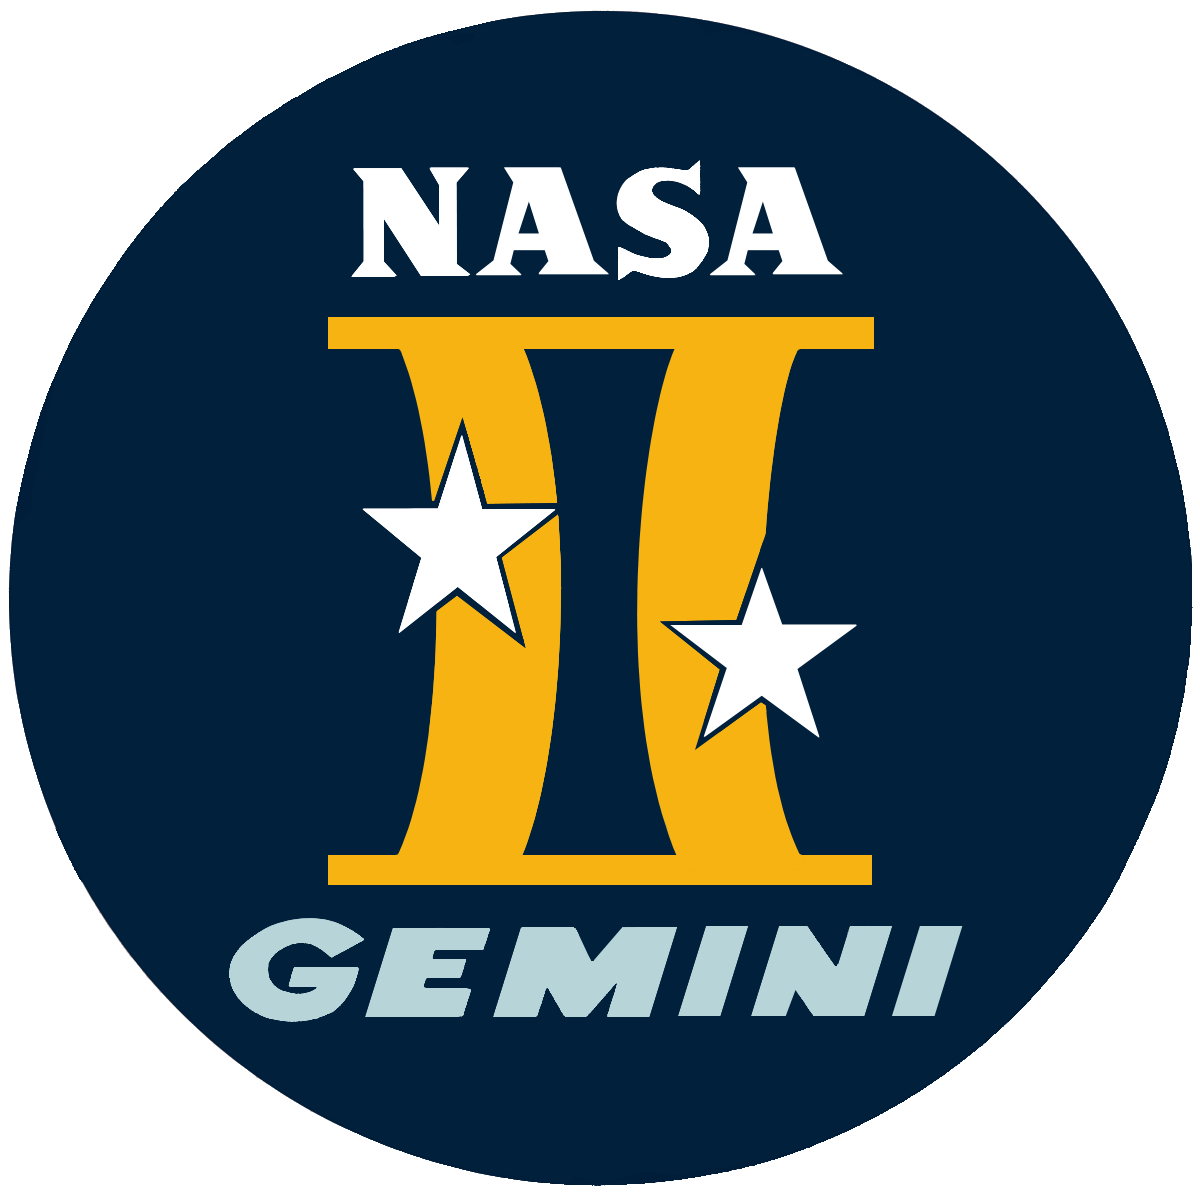 NASA Gemini Project - Джемини - программа США пилотируемых космических полётов